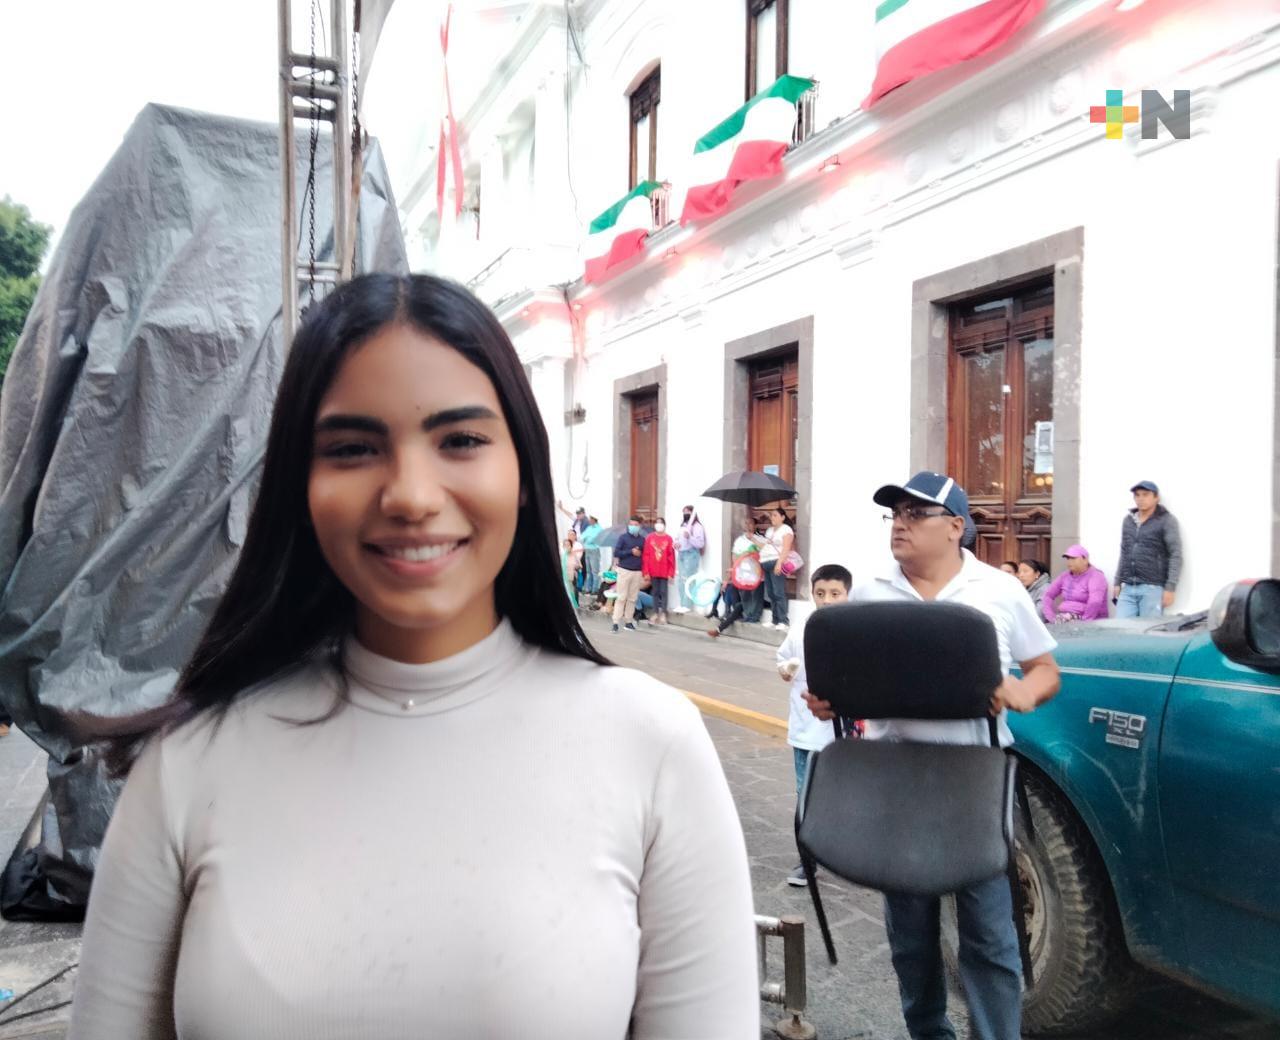 Hoteleros y restauranteros de Coatepec reactivarán economía con fiesta de San Jerónimo